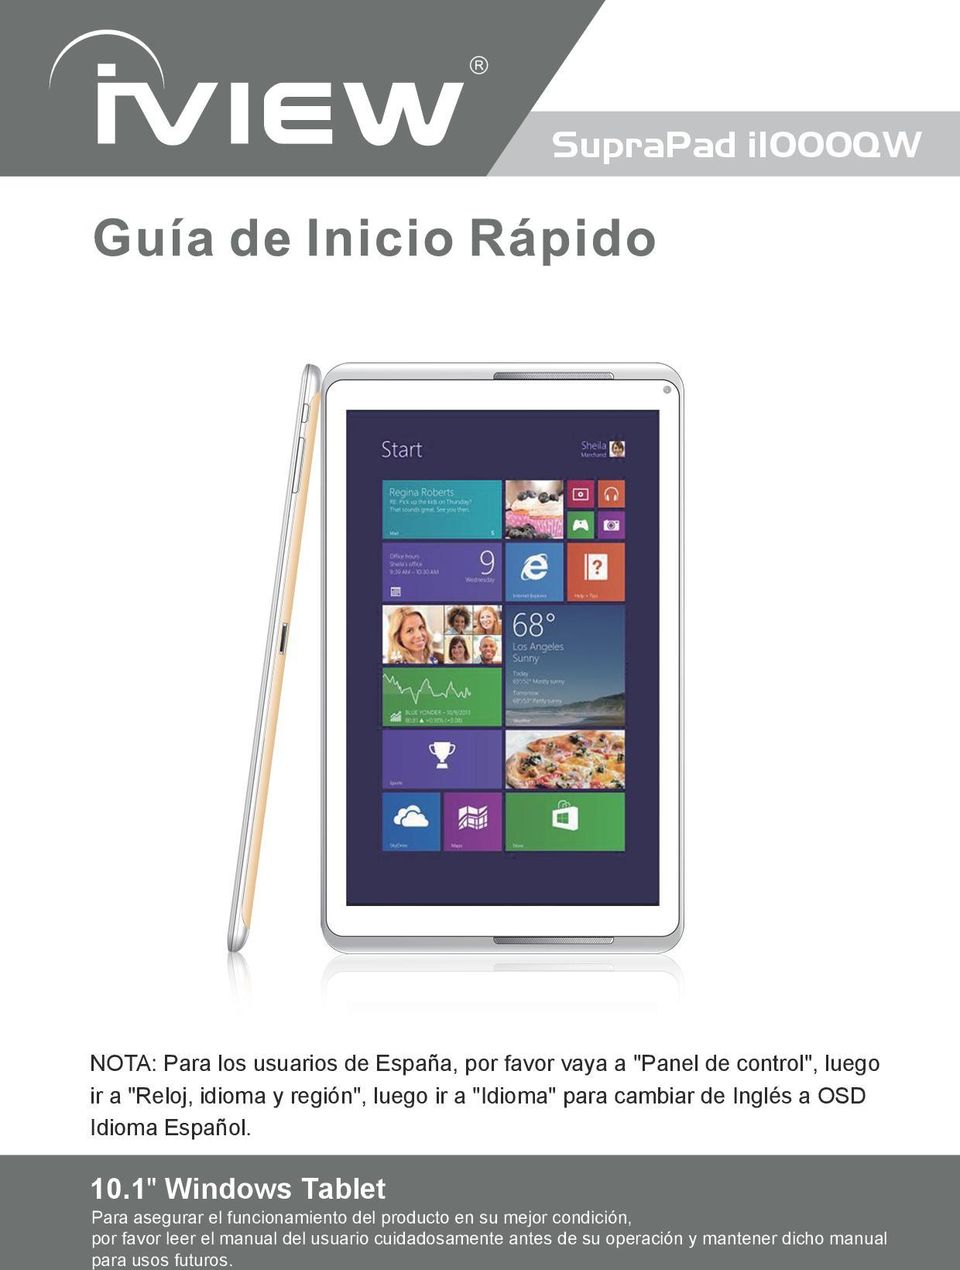 1" Windows Tablet Para asegurar el funcionamiento del producto en su mejor condición, por favor